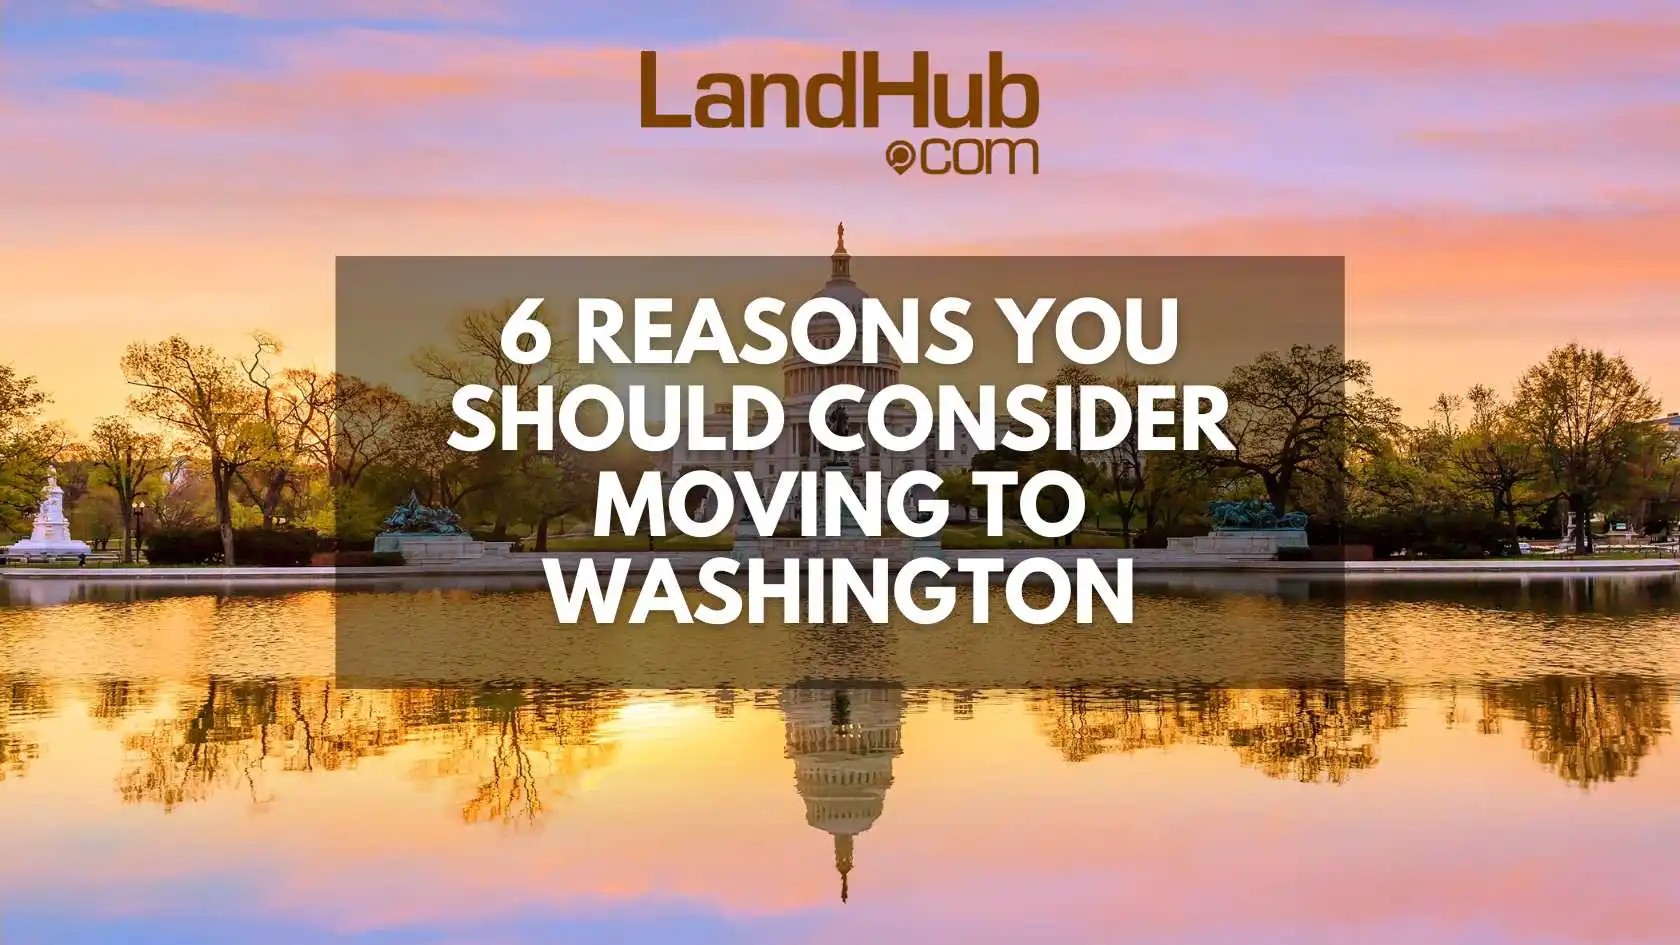 Moving To Washington Image